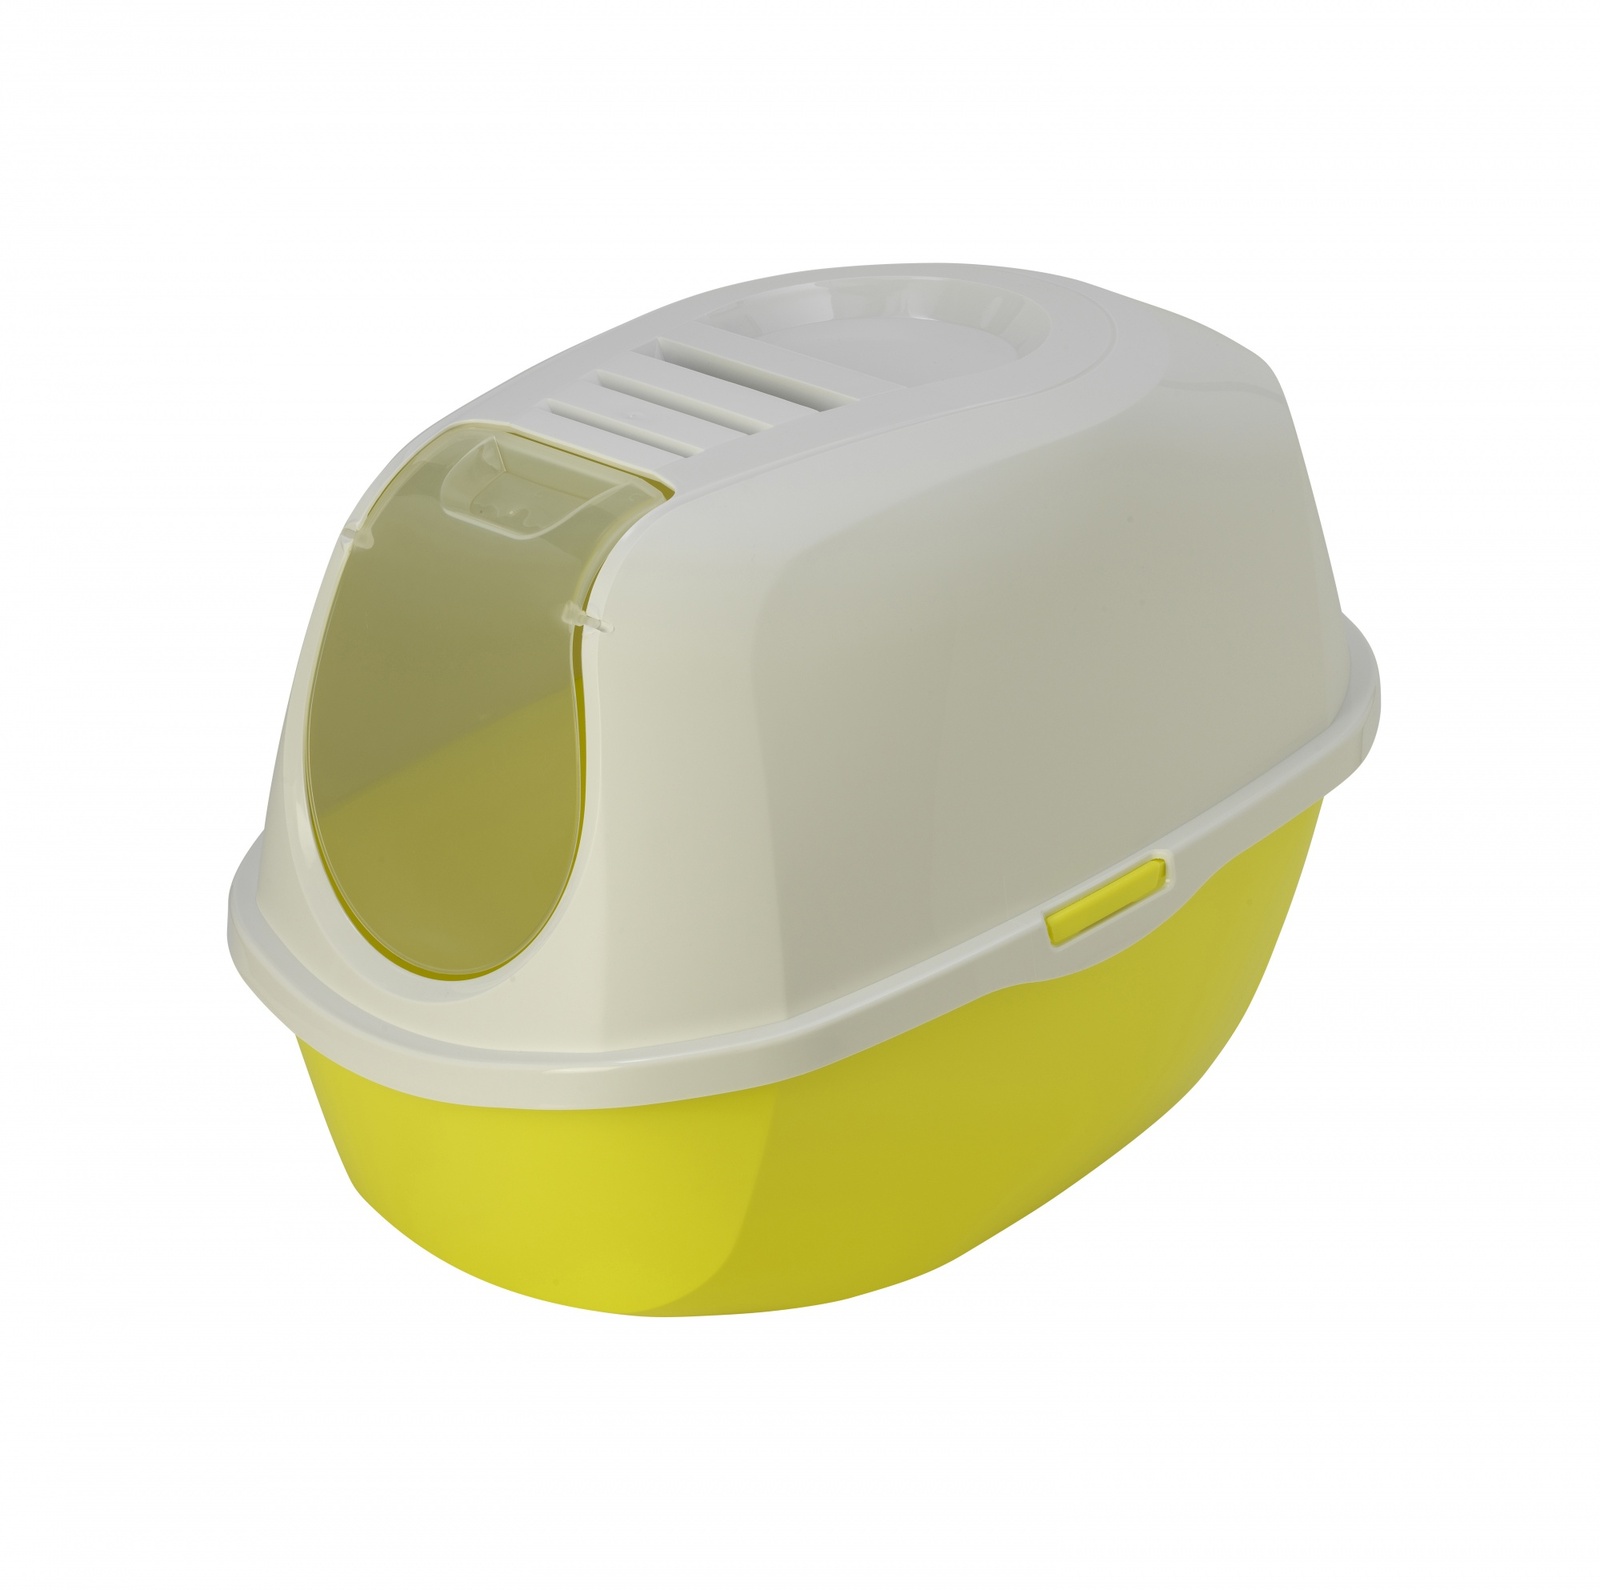 Moderna Moderna туалет-домик SmartCat с угольным фильтром, 54х40х41см, лимонно-желтый (1,2 кг) moderna moderna туалет домик с угольным фильтром trendy cat райский сад 1